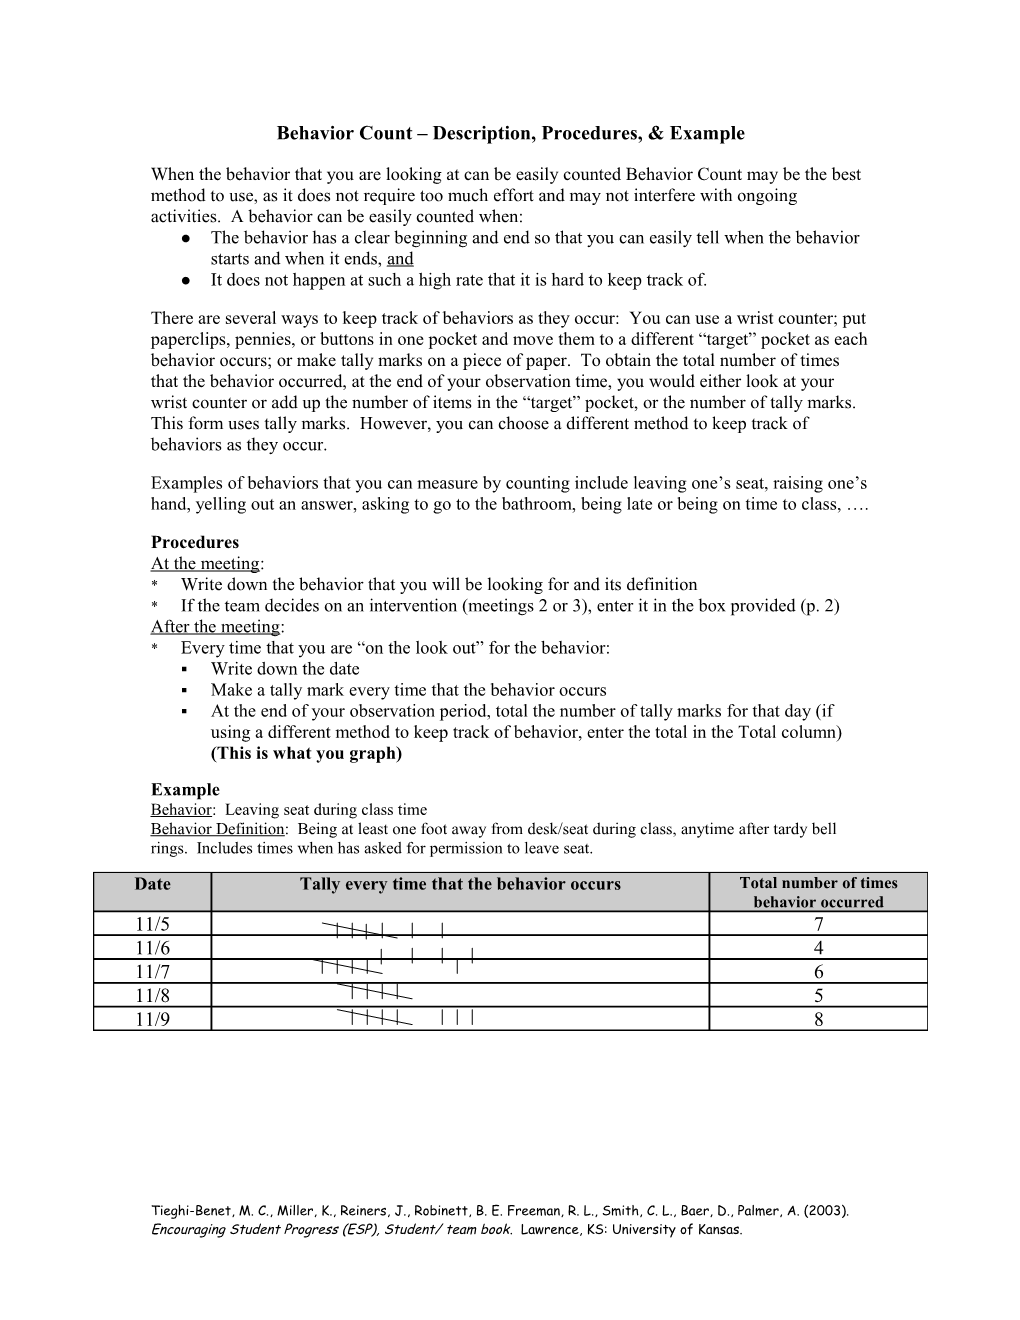 Behavior Count Description, Procedures, & Example